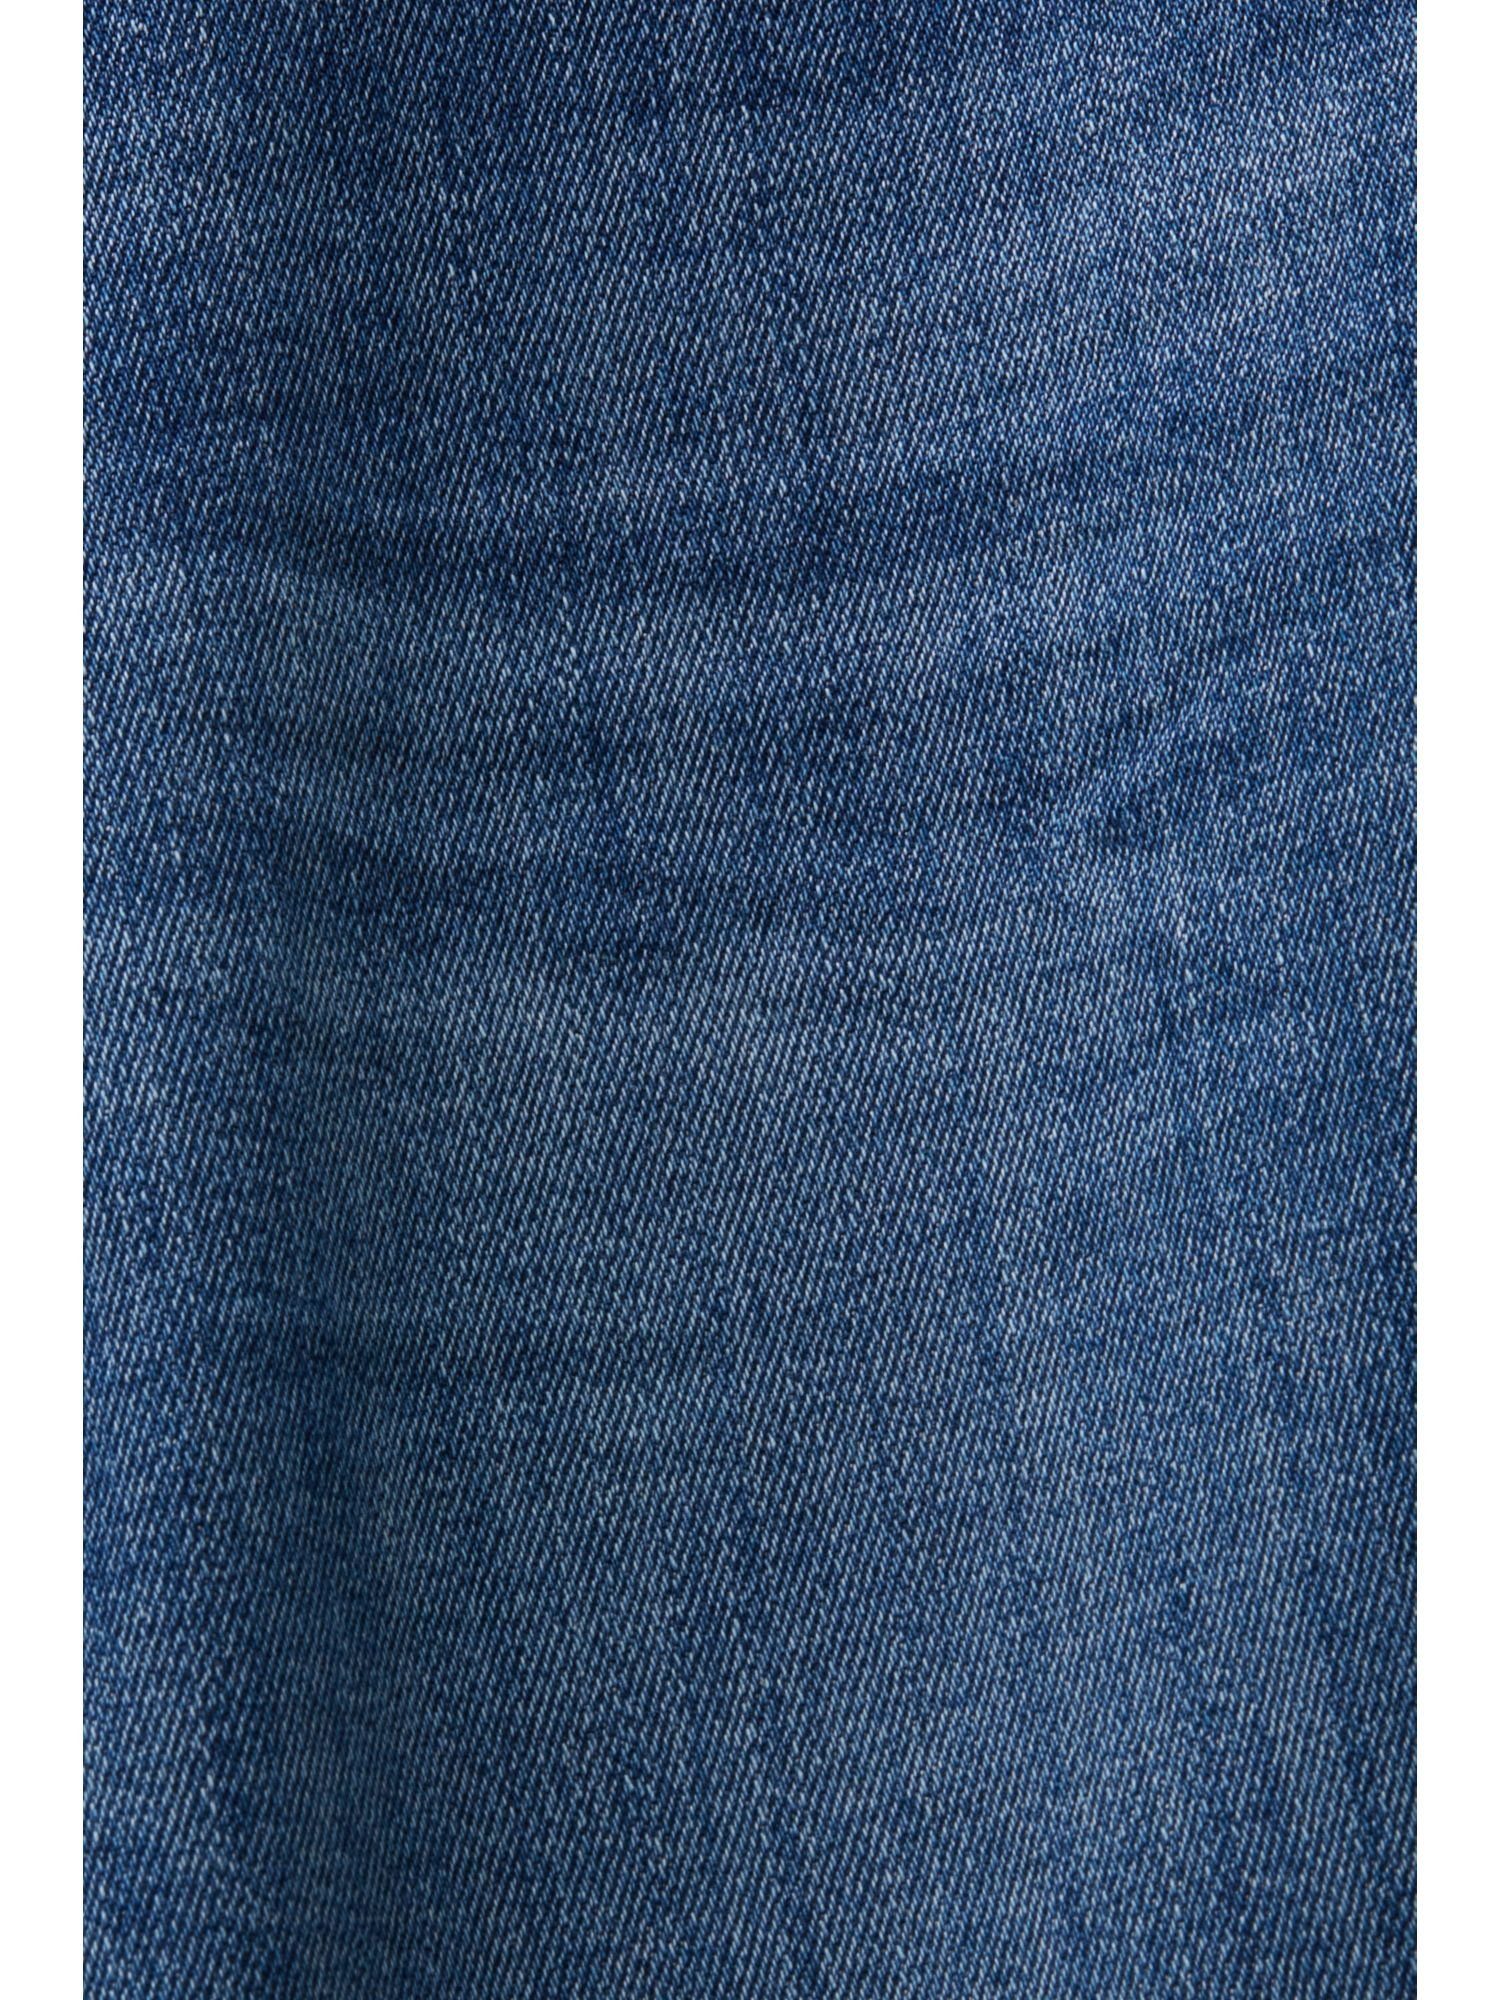 Gerade mittelhohem mit geschnittene Esprit Jeans Straight-Jeans Bund